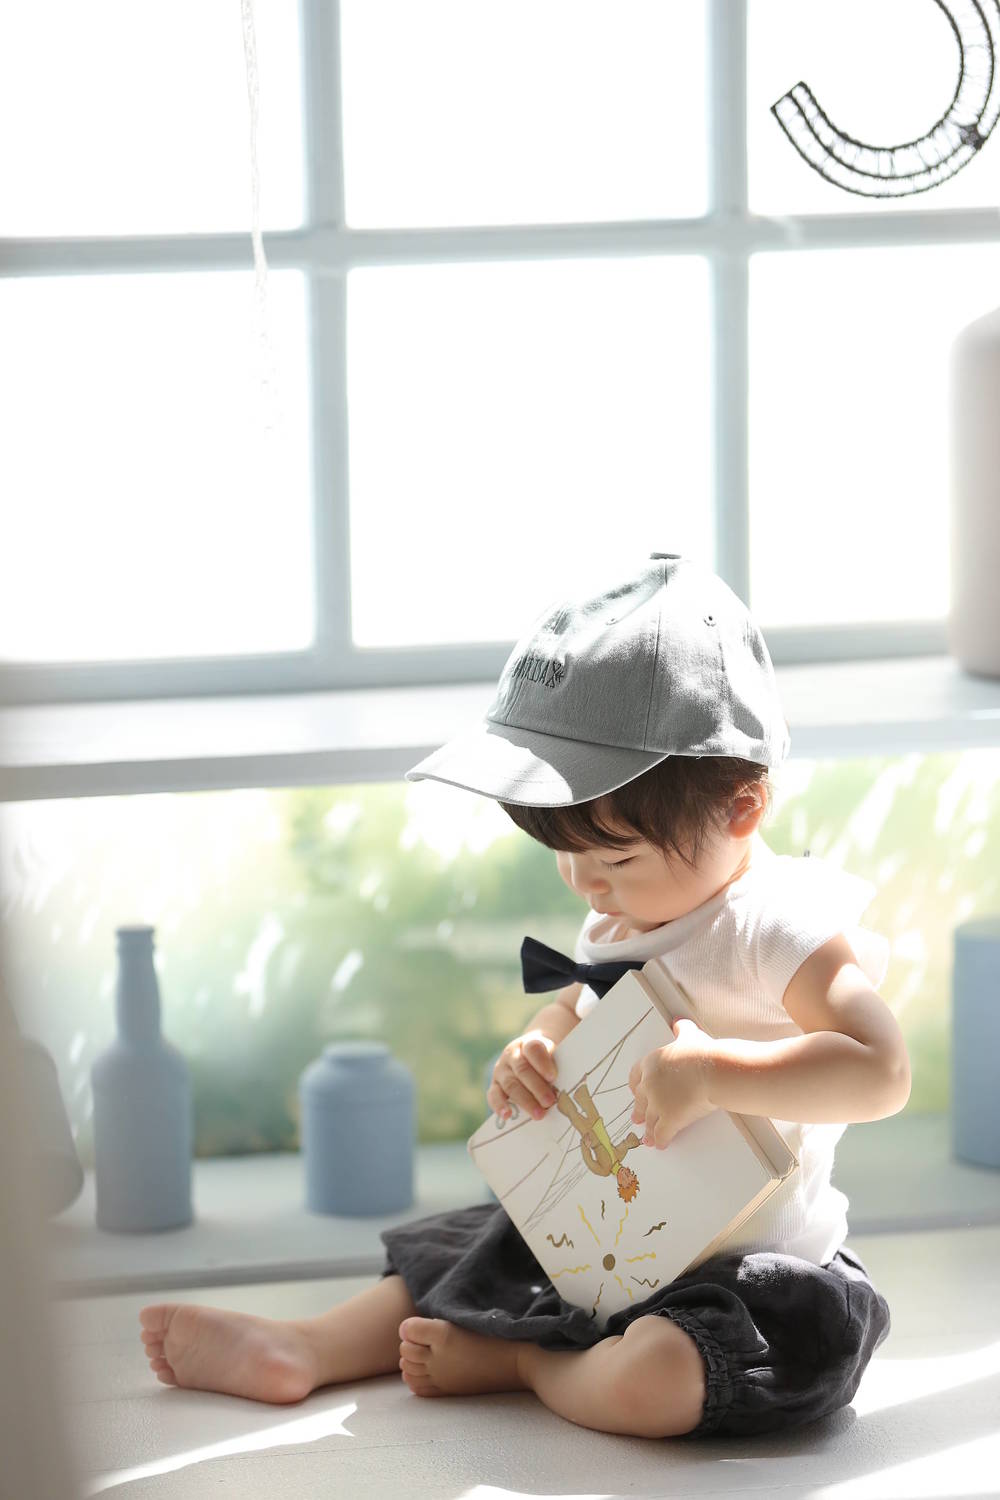 ライフスタジオ名古屋の1歳の記念撮影におすすめの衣装 Nagoyablog 子供から家族まで自然でおしゃれに残す人生の写真館 ライフスタジオ